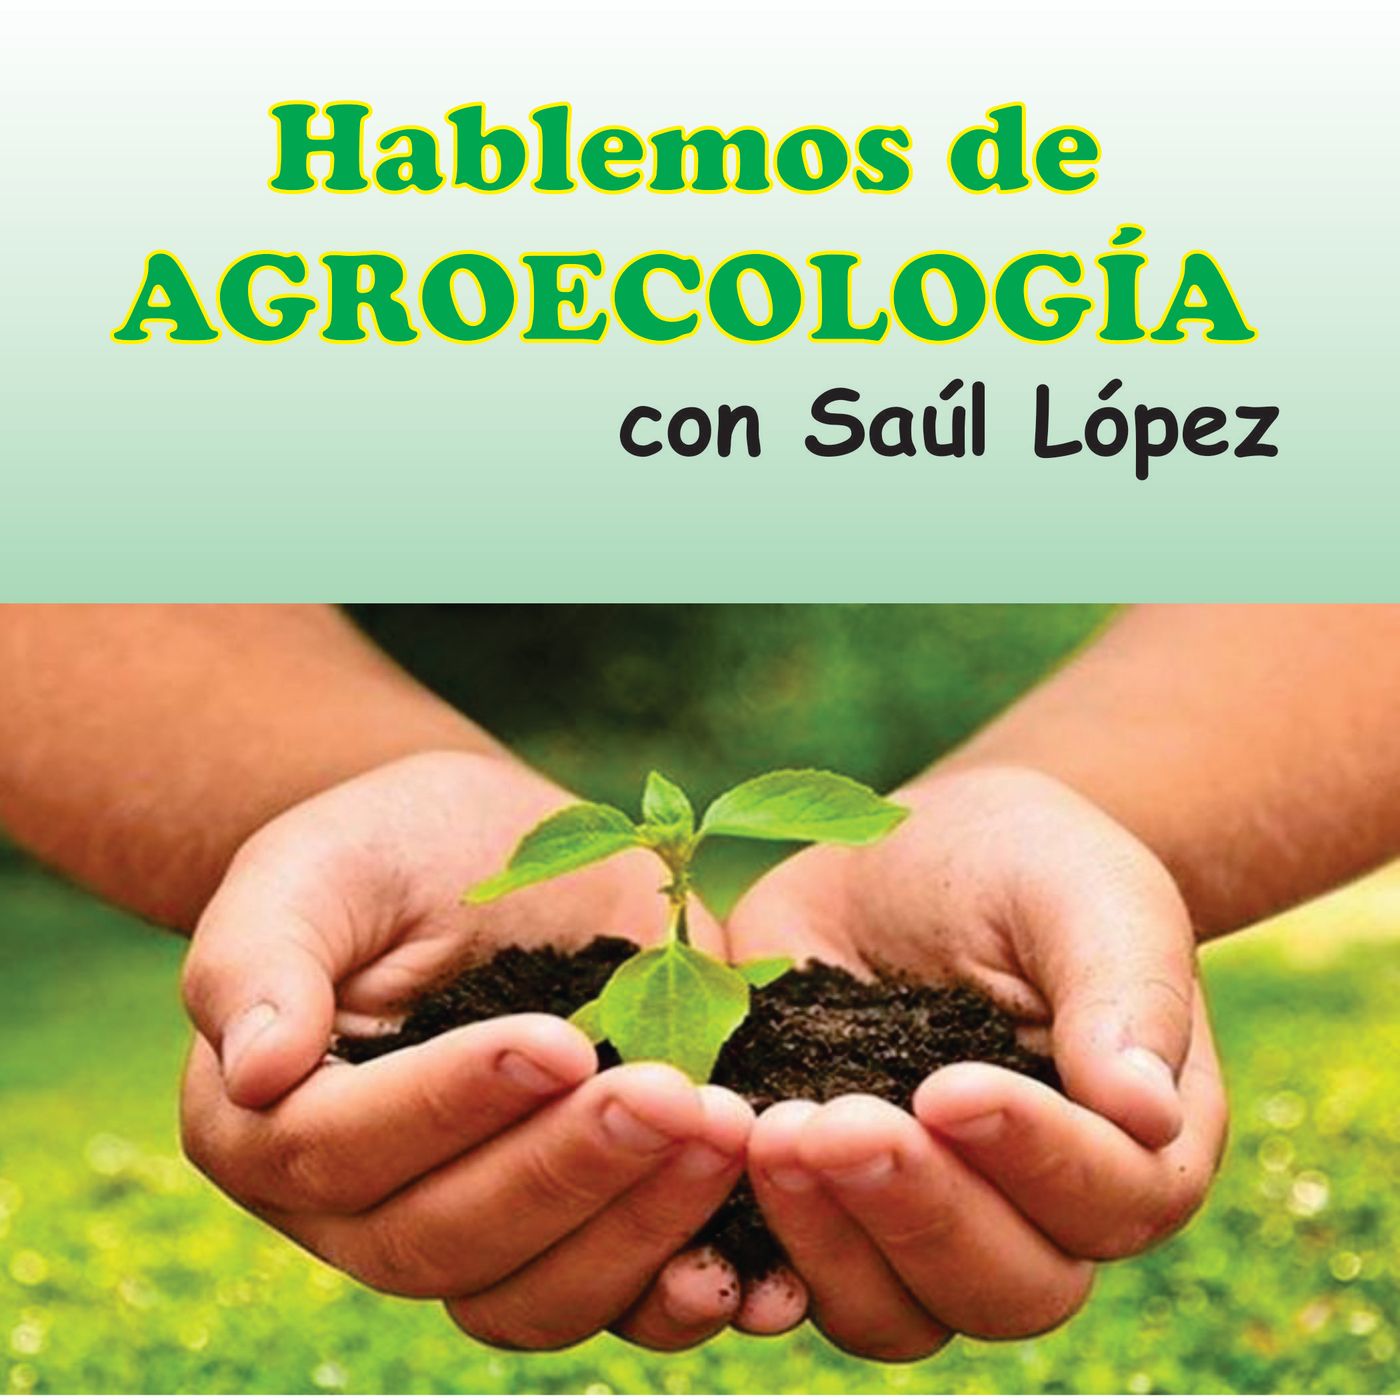 Ep 3 Hablemos de Agro ecología: Orígenes, historia y principios de agro ecologia.